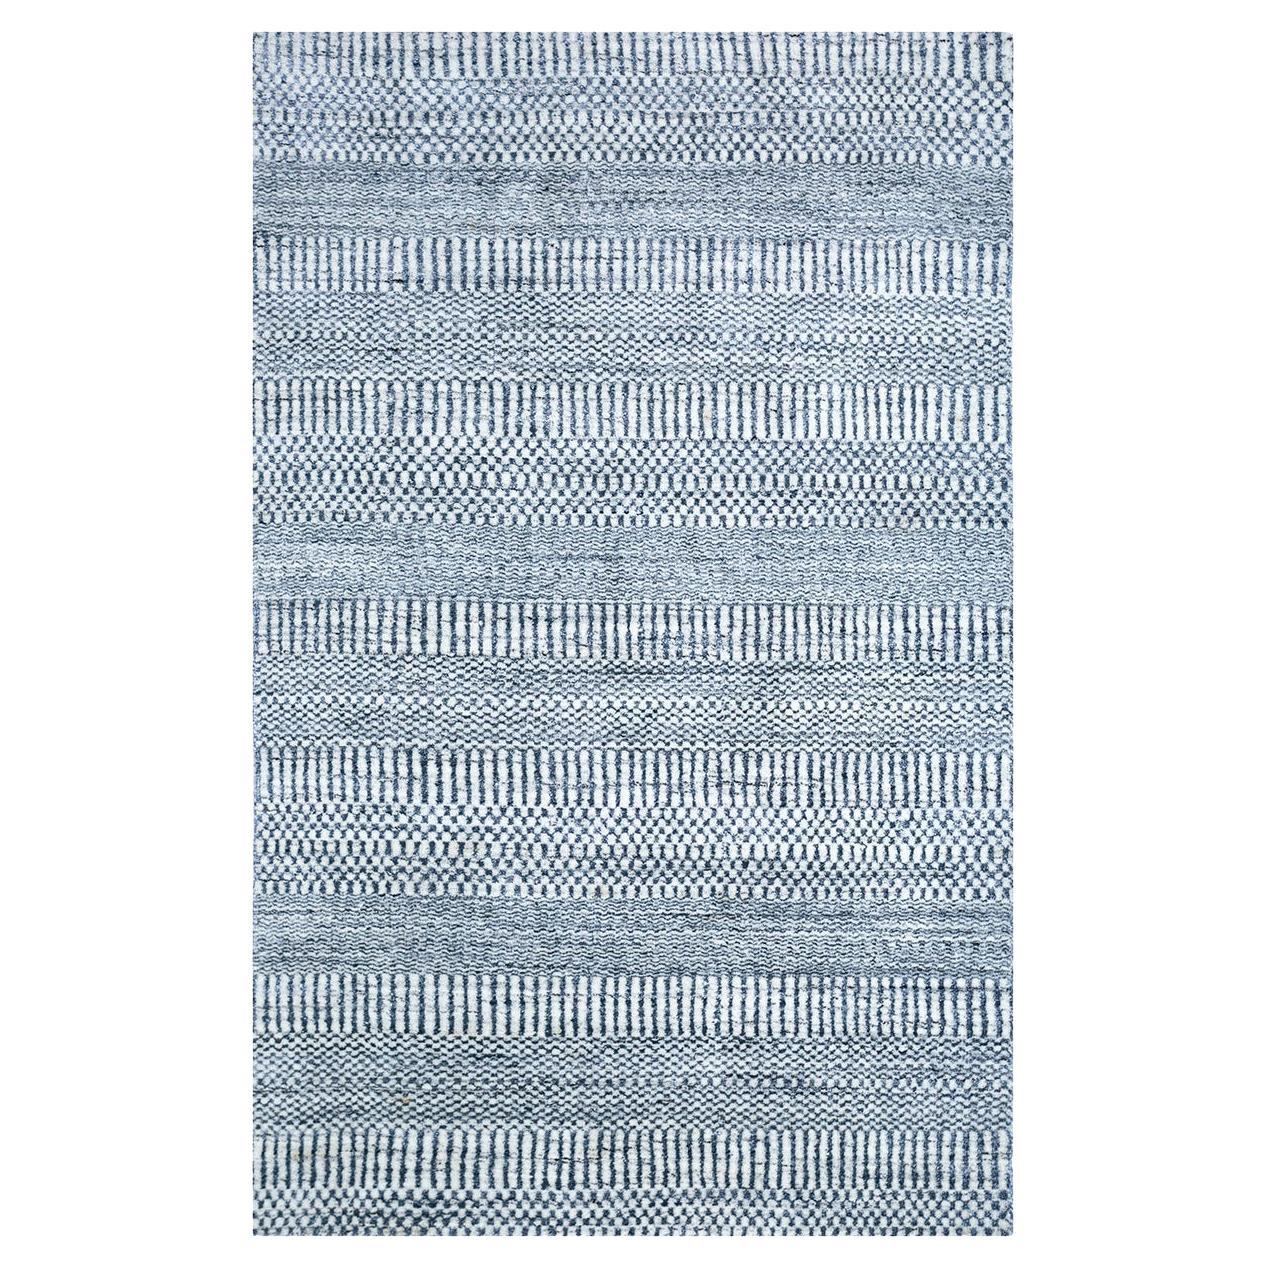  Indigofarbener Teppich von Rural Weavers, Loom, Wolle, Bambusseide, 180x270cm